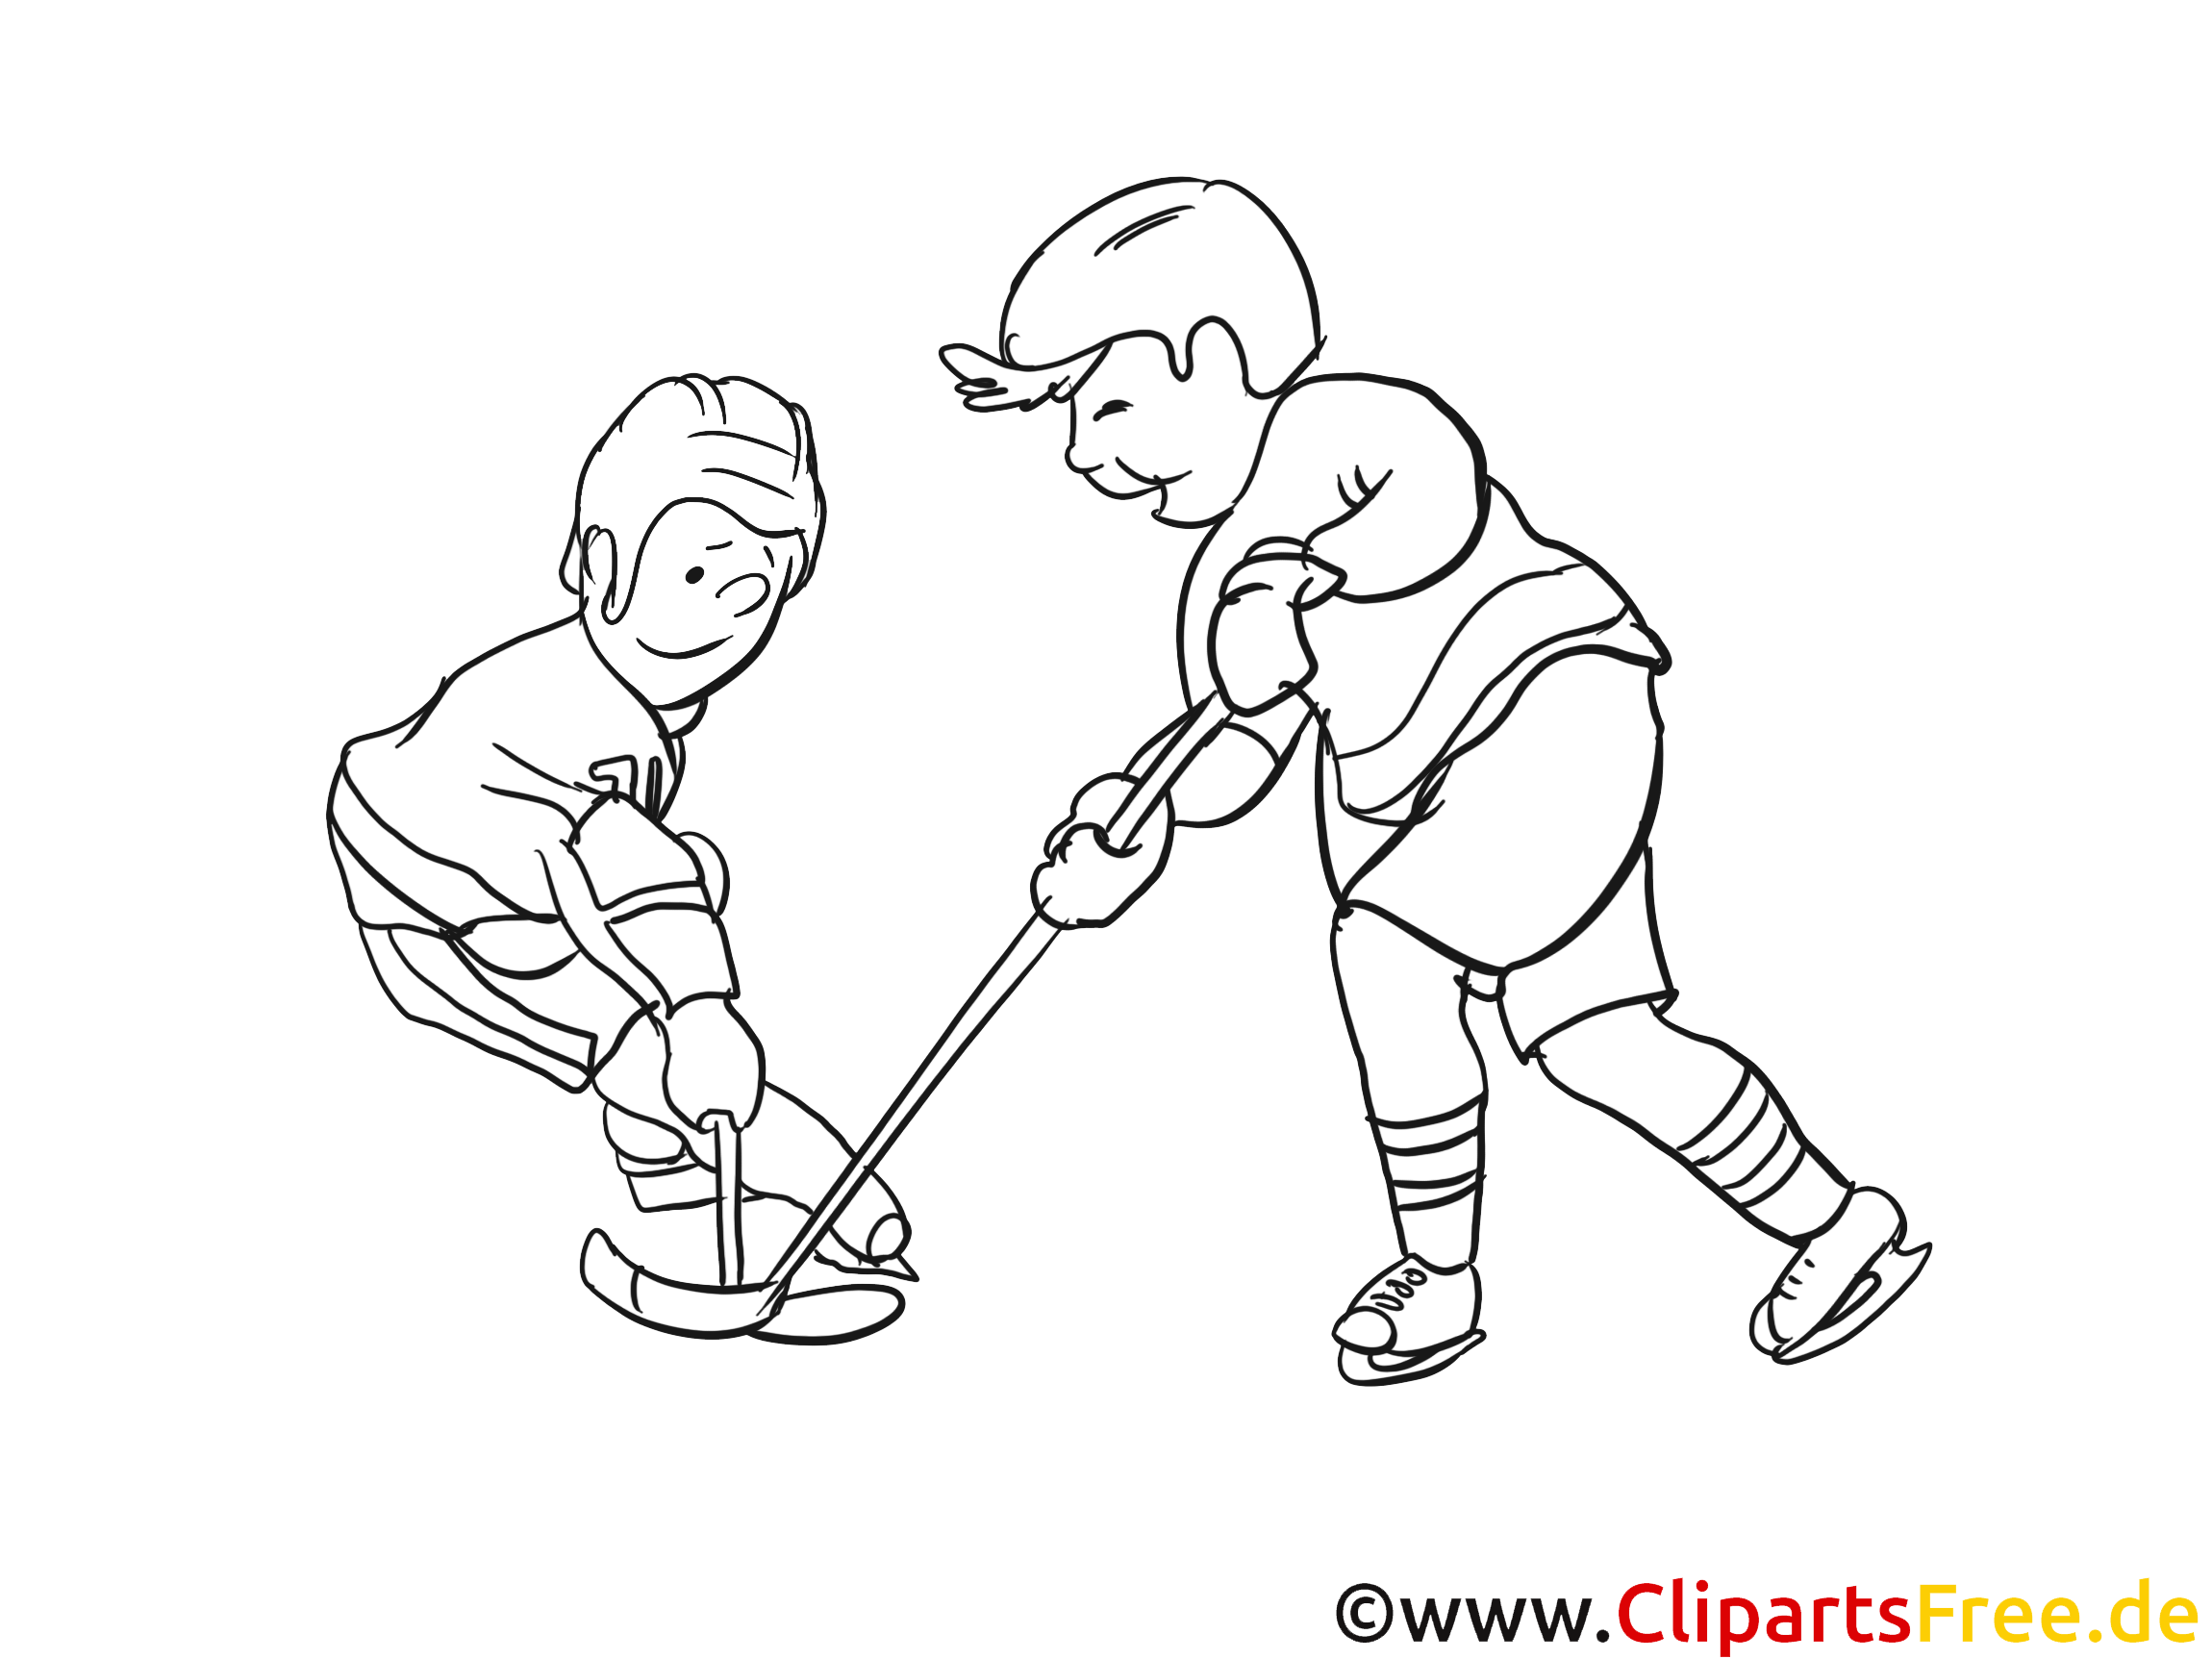 Hockeyeurs images gratuites – Hockey à colorier